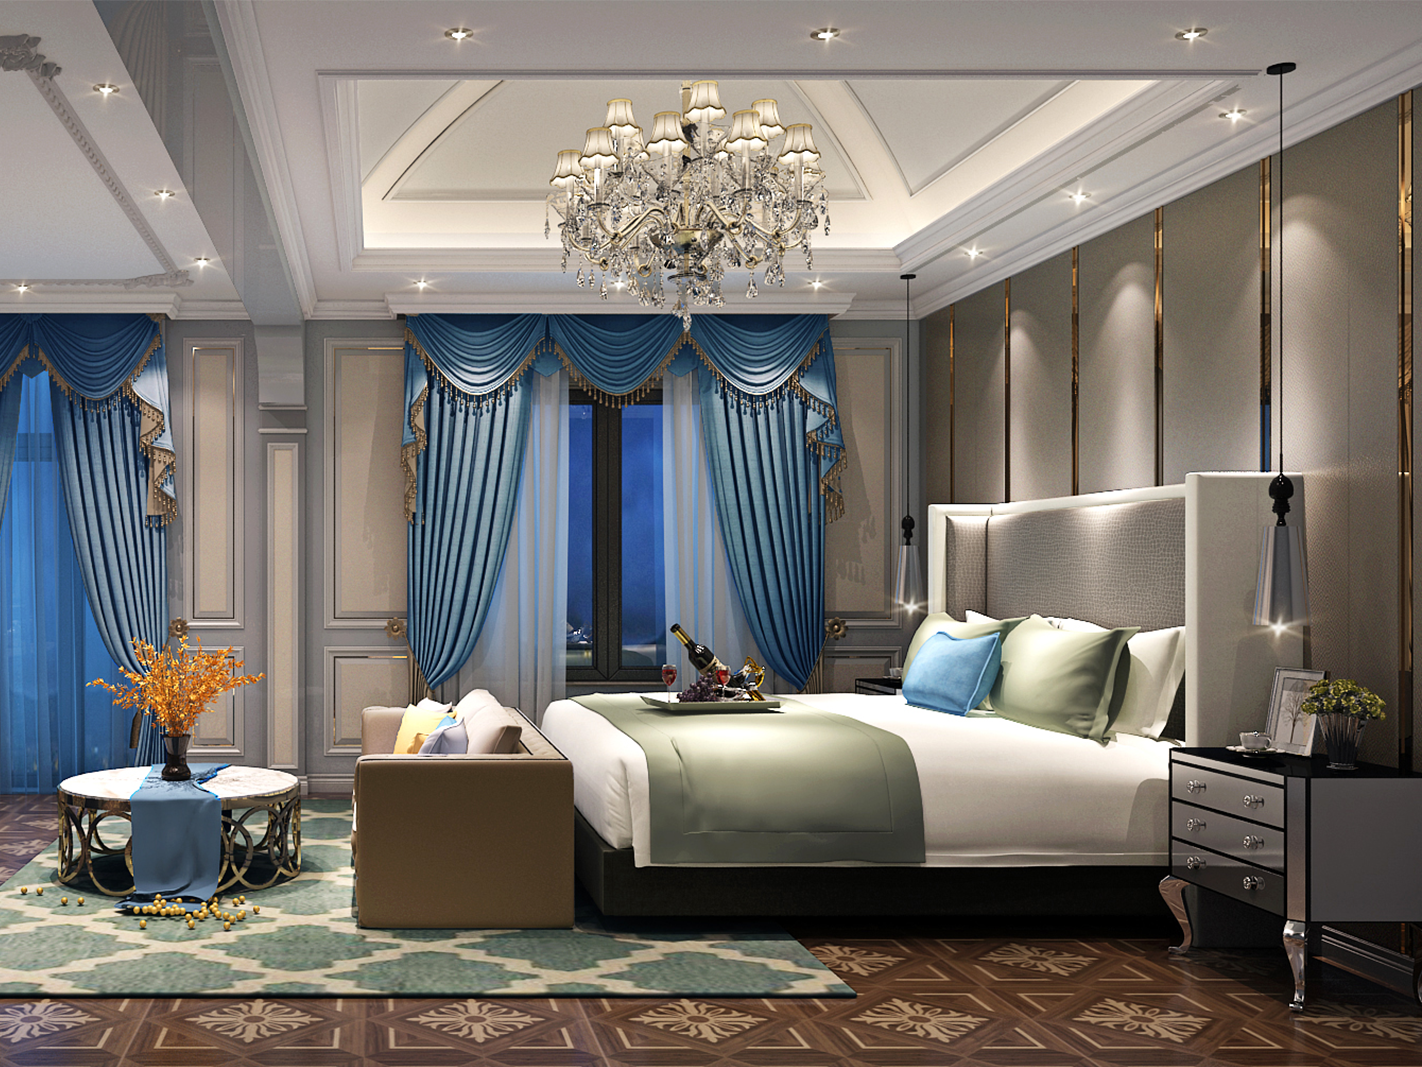 嘉定区华润中央公园620平美式风格独栋别墅卧室装修效果图